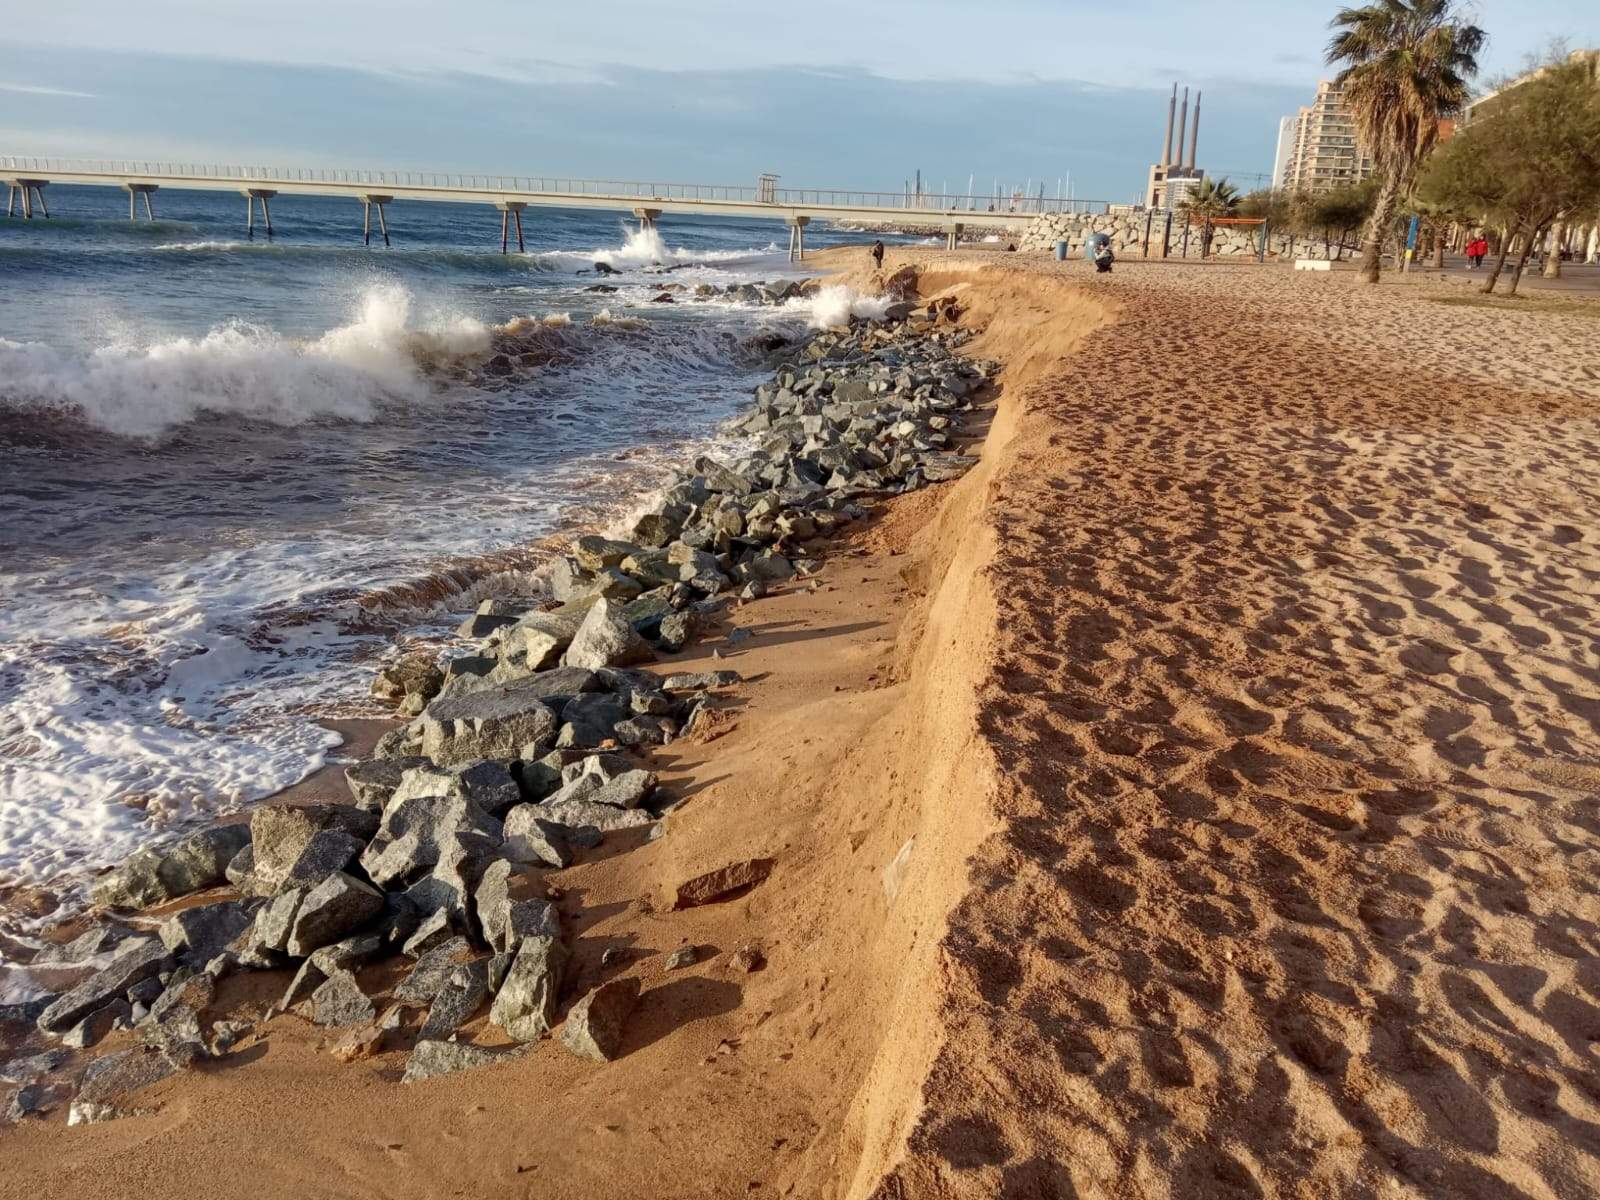 El coste de no tener playas: familias en paro y la economía del litoral tocada